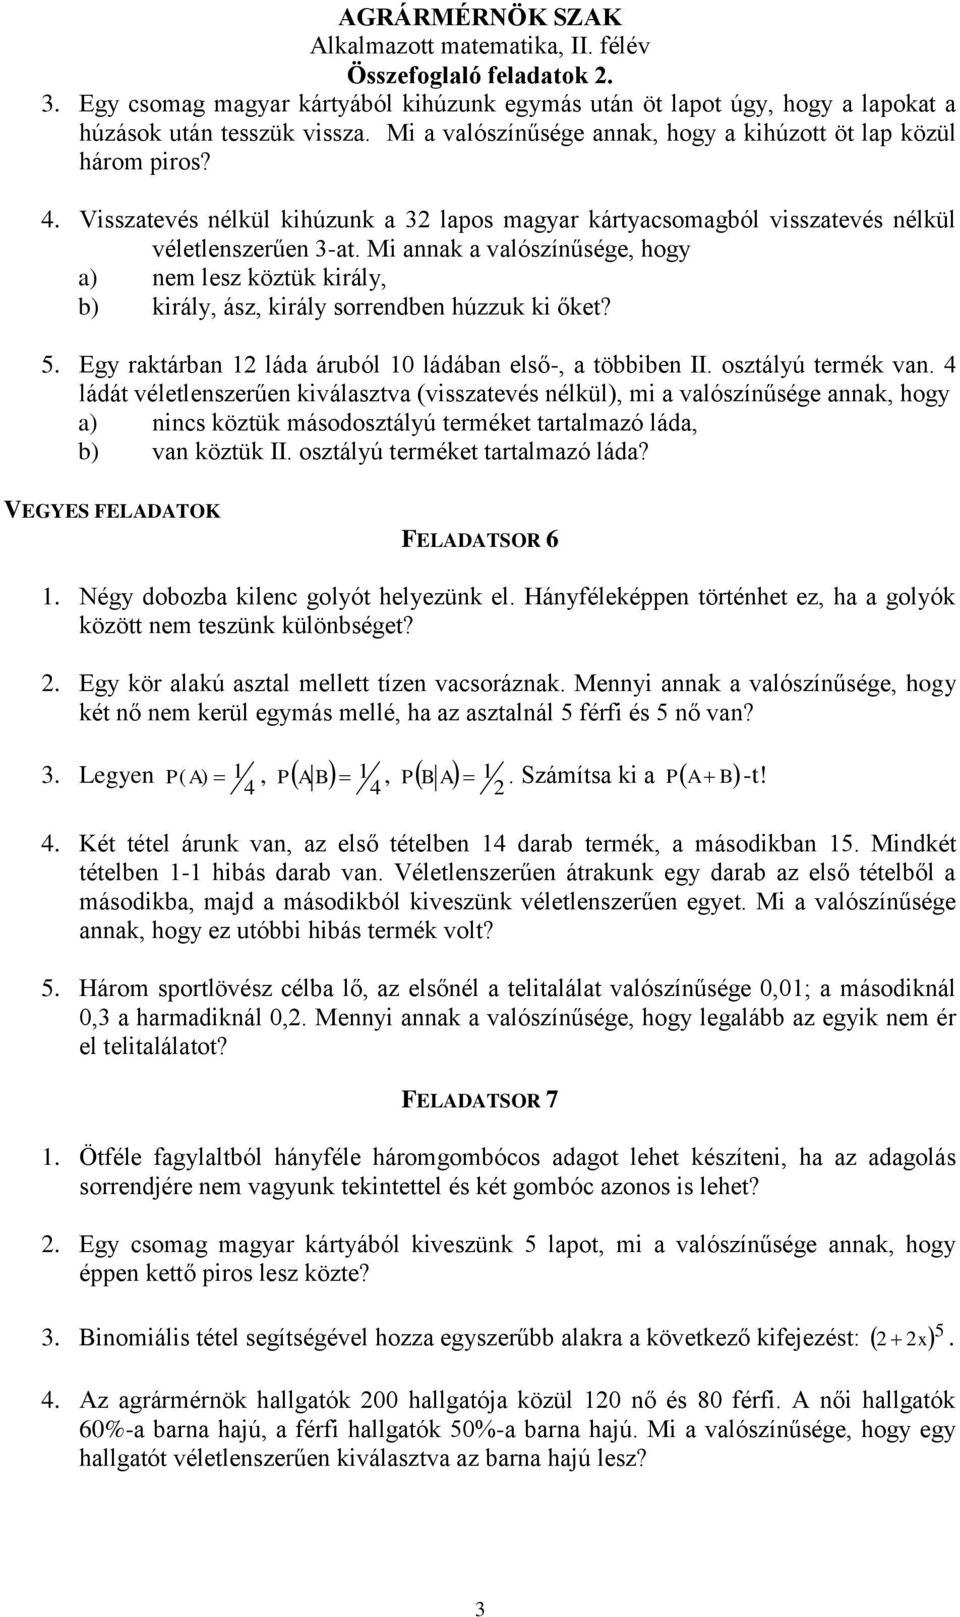 AGRÁRMÉRNÖK SZAK Alkalmazott matematika, II. félév Összefoglaló feladatok A  síkban 16 db általános helyzetű pont hány egyenest határoz meg? - PDF  Ingyenes letöltés